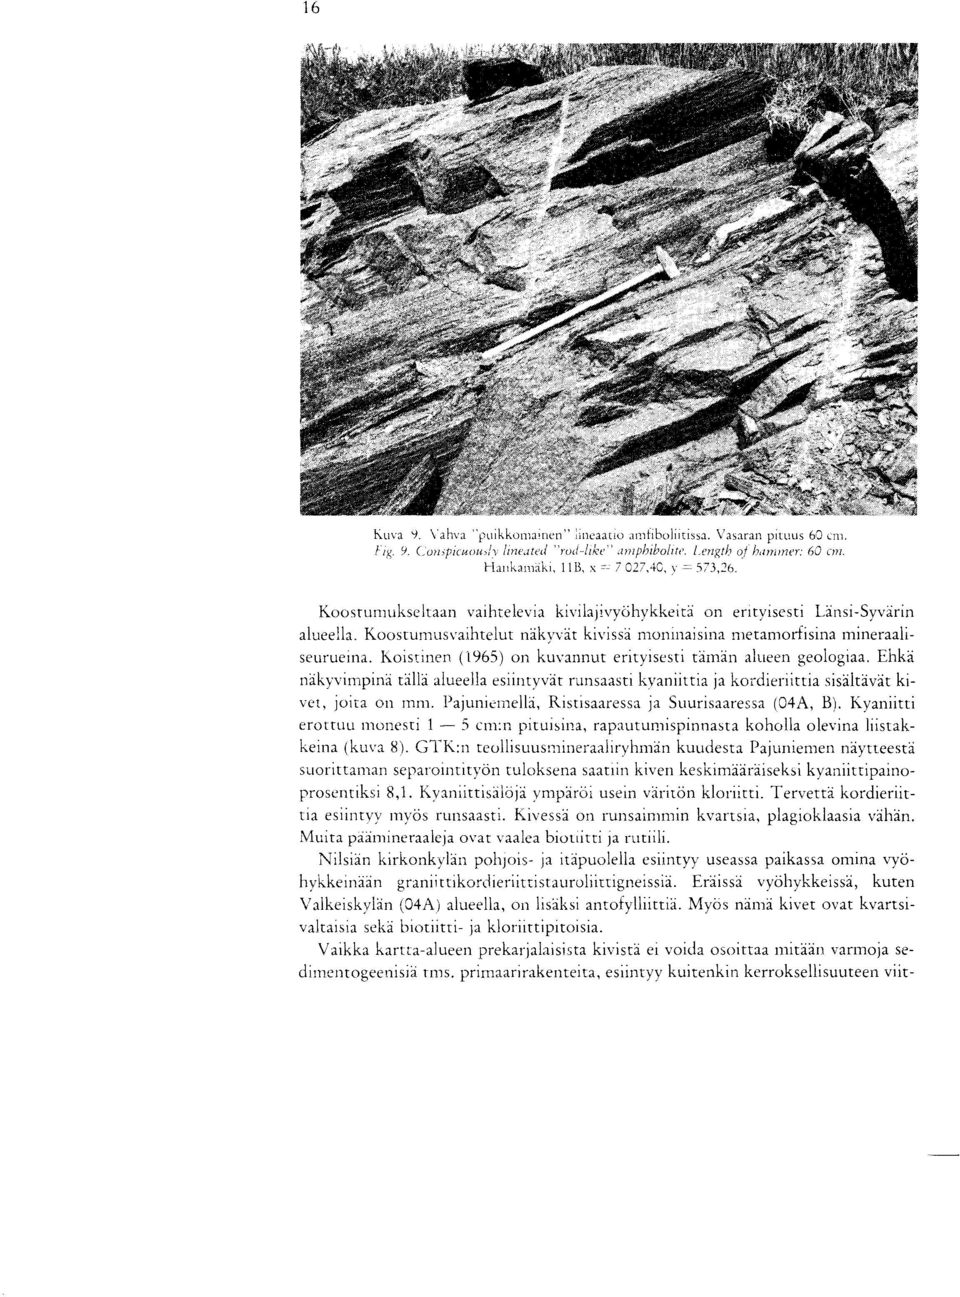 Koostumusvaihteiut nakvvat kivissa moninaisina nietaznorfisina mineraaliseurueina. Koistinen (1965) on kuvannut erityisesti Oman alueen geologiaa.